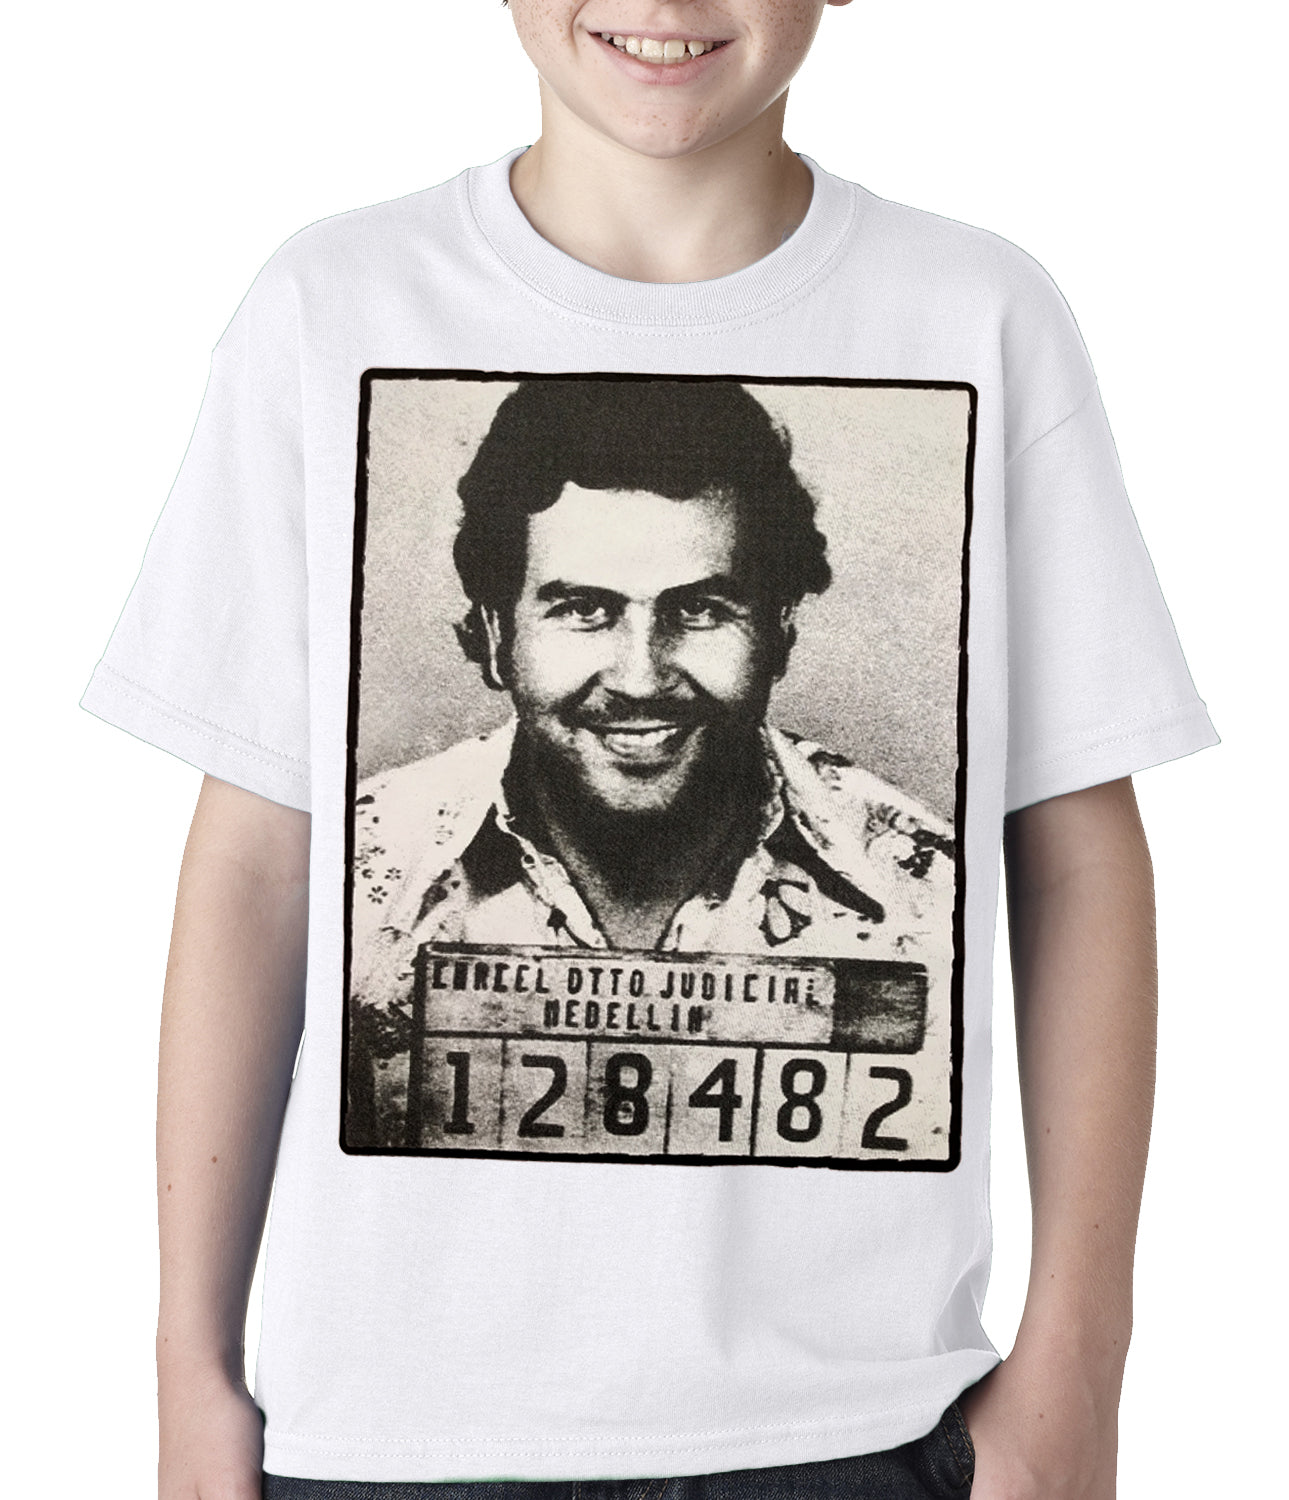 Pablo Escobar Smiling Mug Shot Kids T-shirt